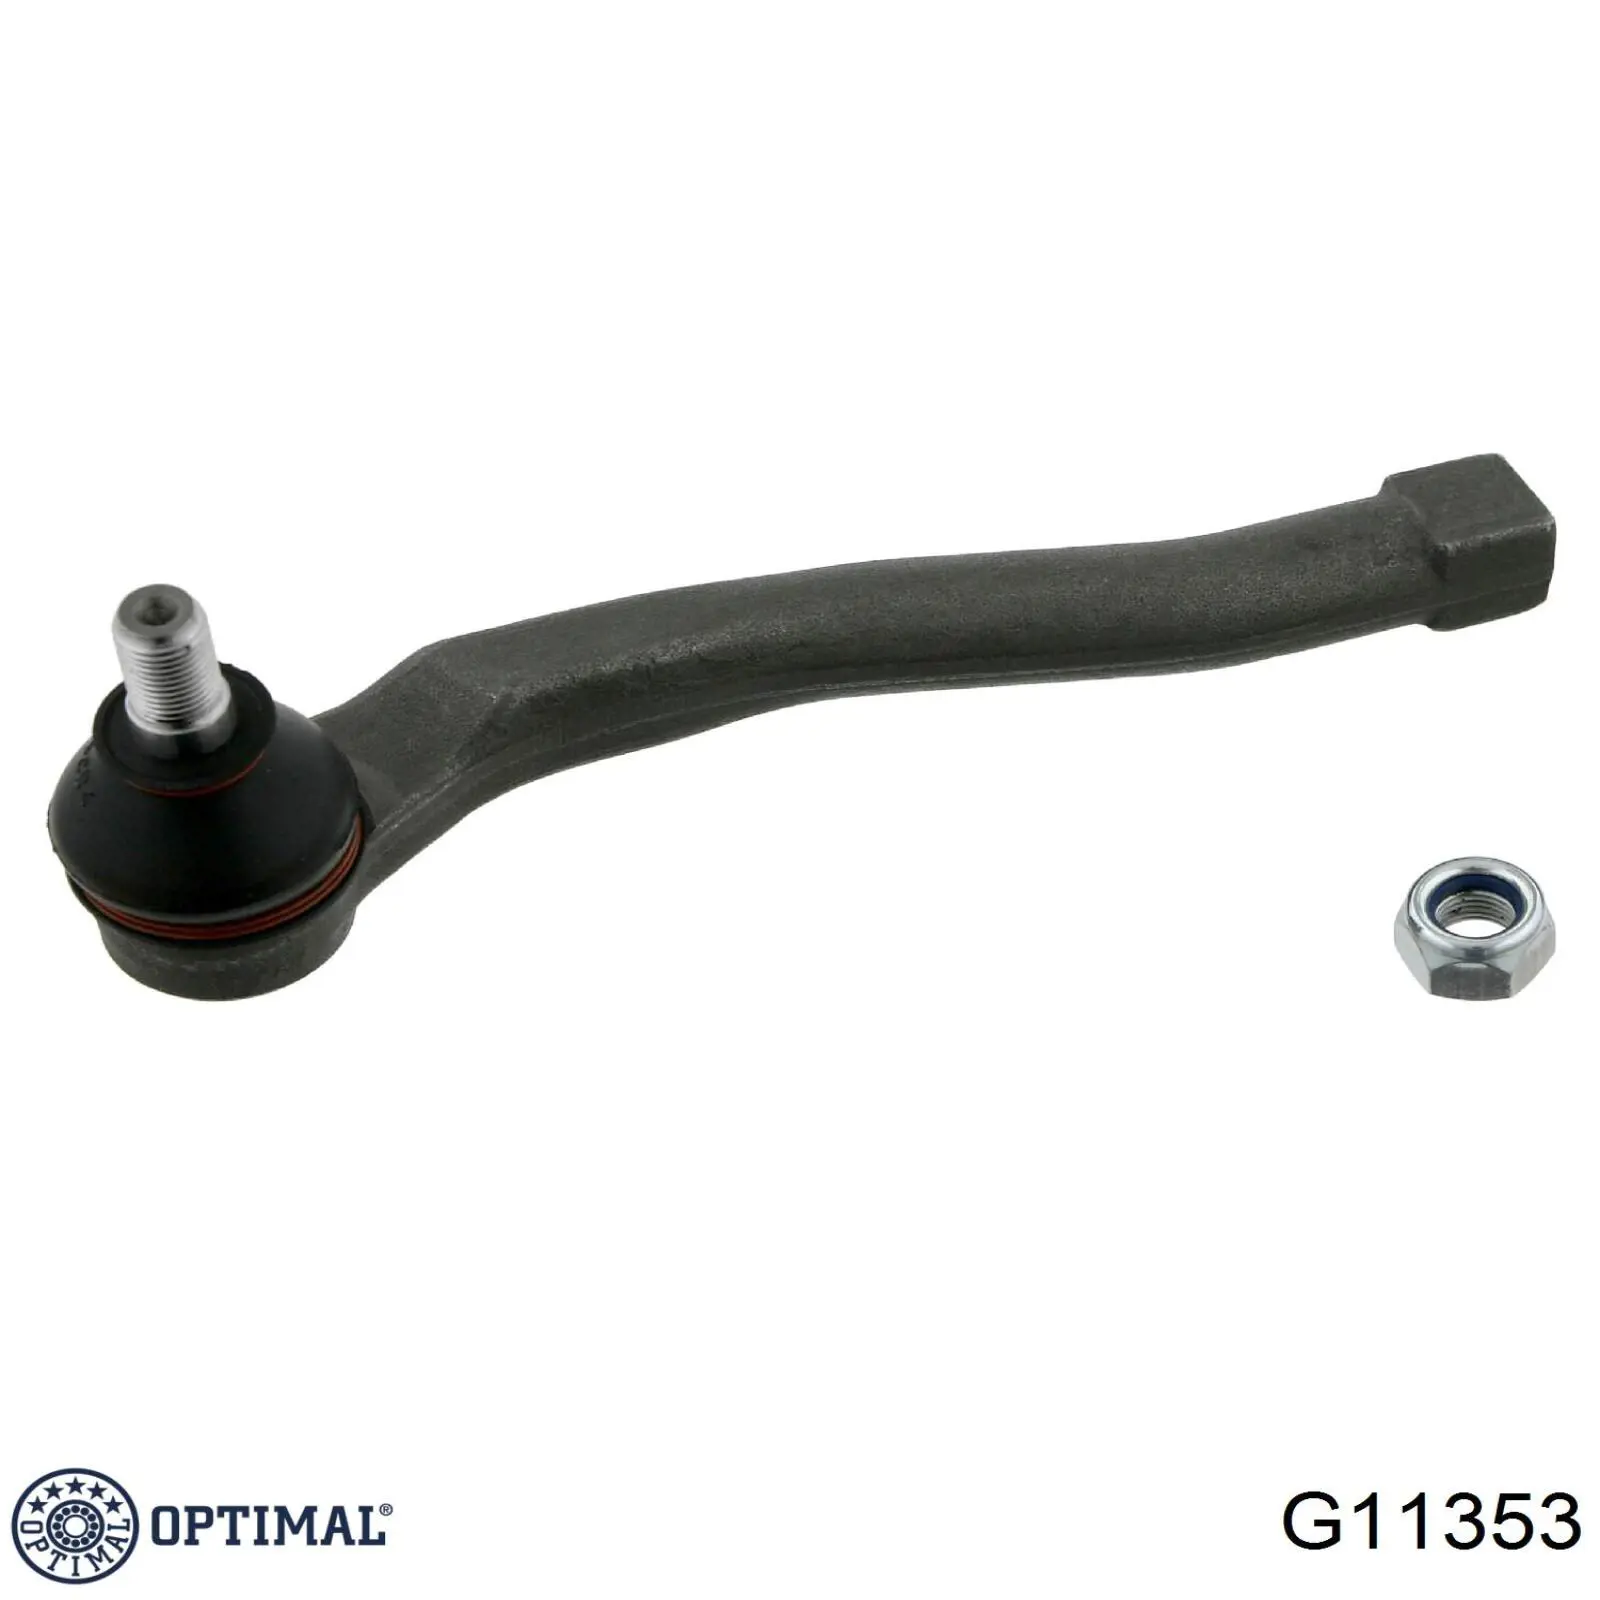 G11353 Optimal rótula barra de acoplamiento exterior